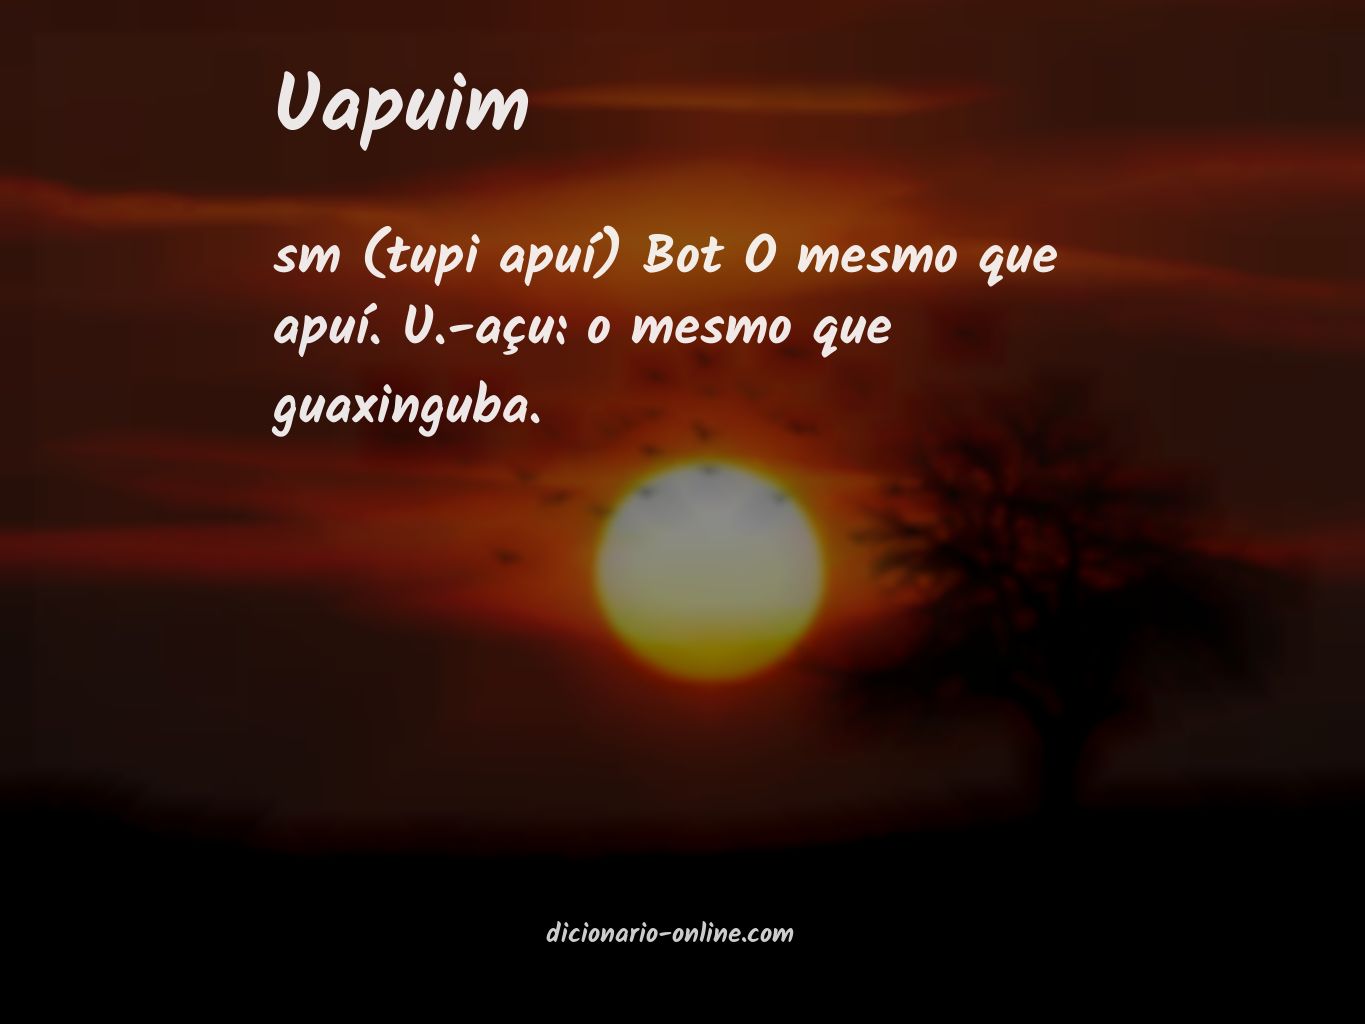 Significado de uapuim